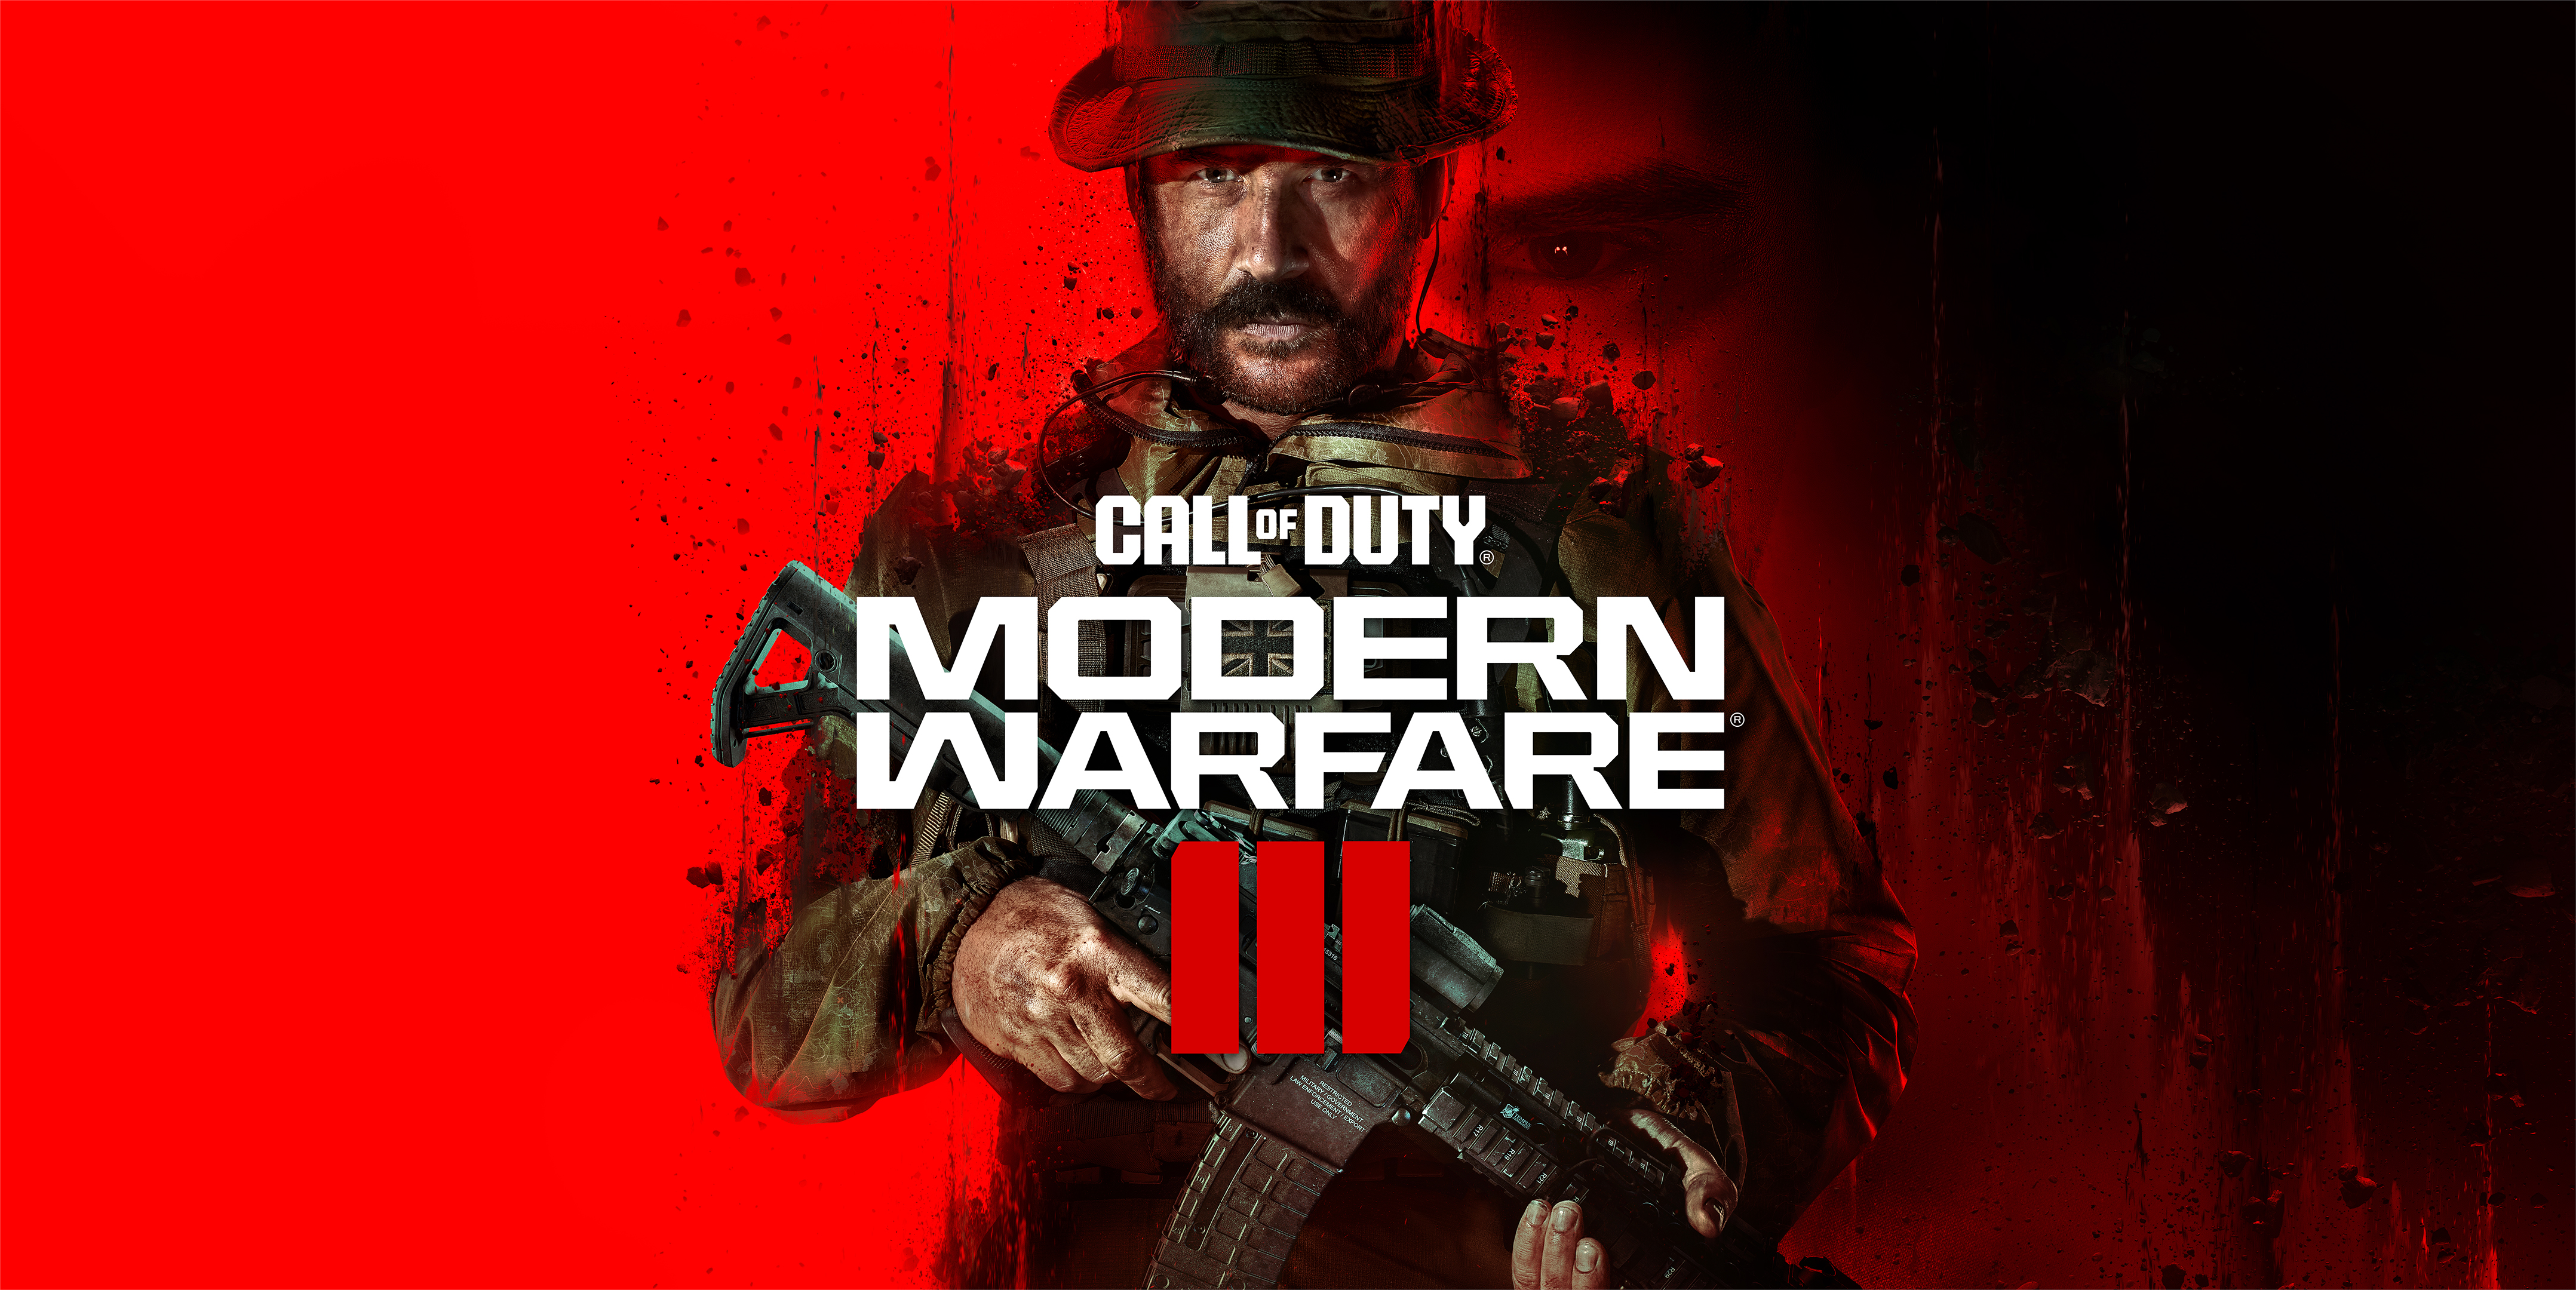 Call of Duty: Modern Warfare II - Next Gen Immersion Trailer